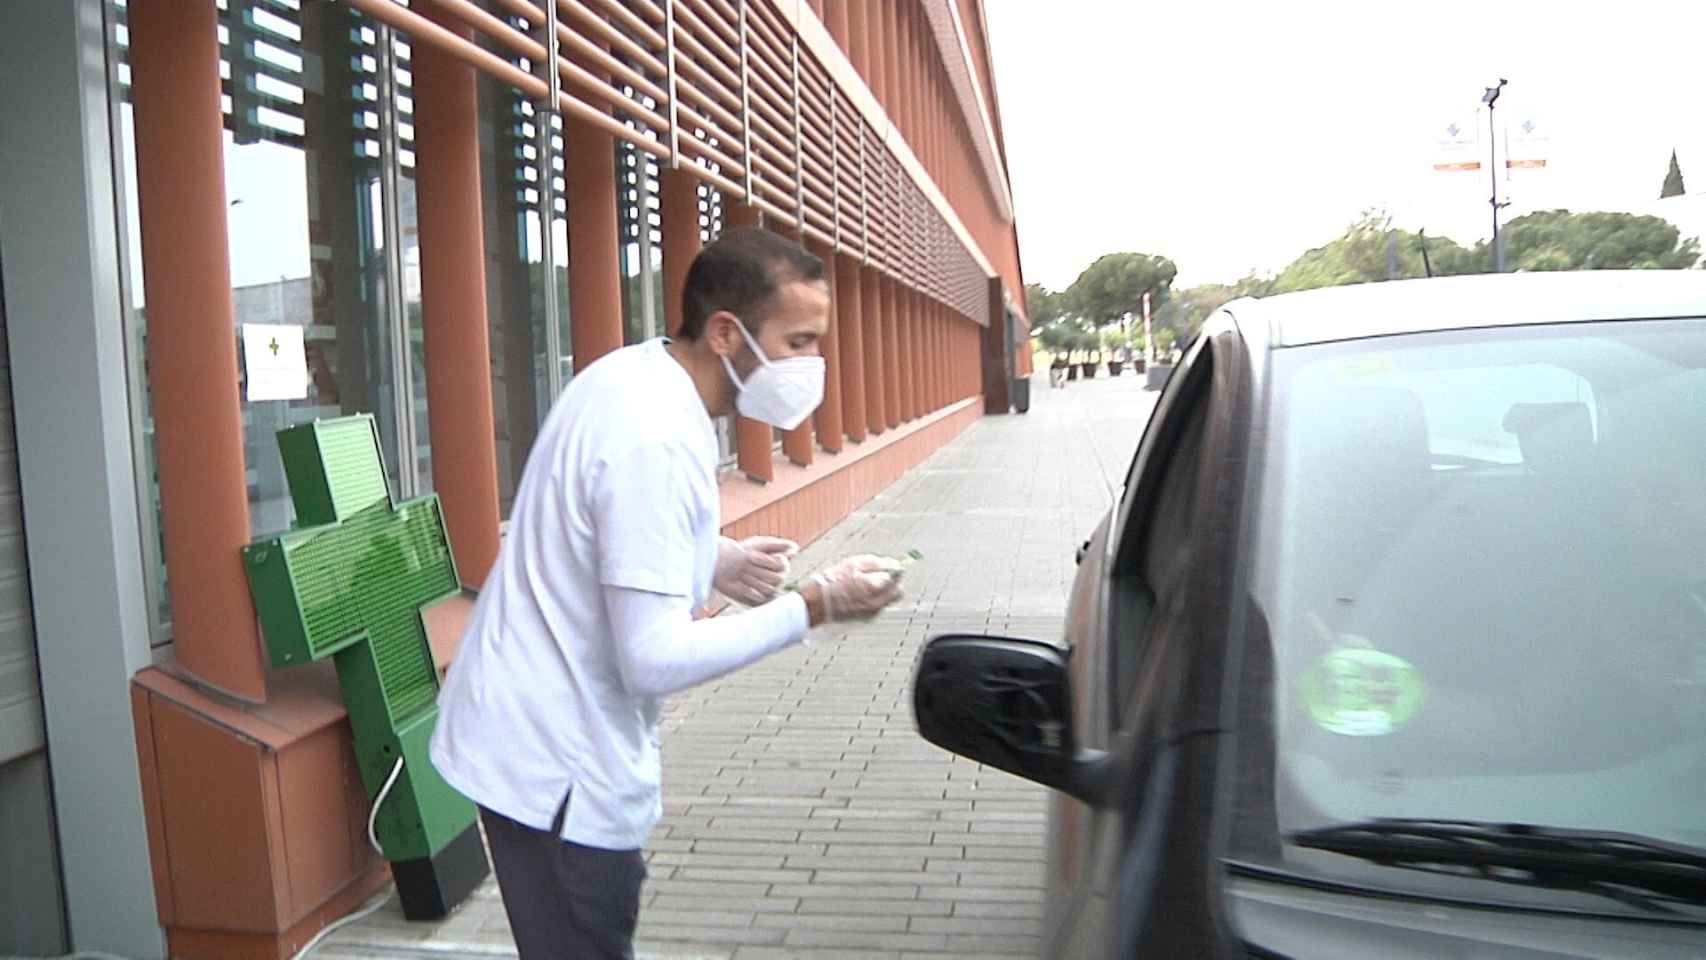 Una farmacia en Torre (Sevilla), permite recoger medicamentos desde los coches para evitar el contacto. En imagen, el farmacéutico entregando el producto.